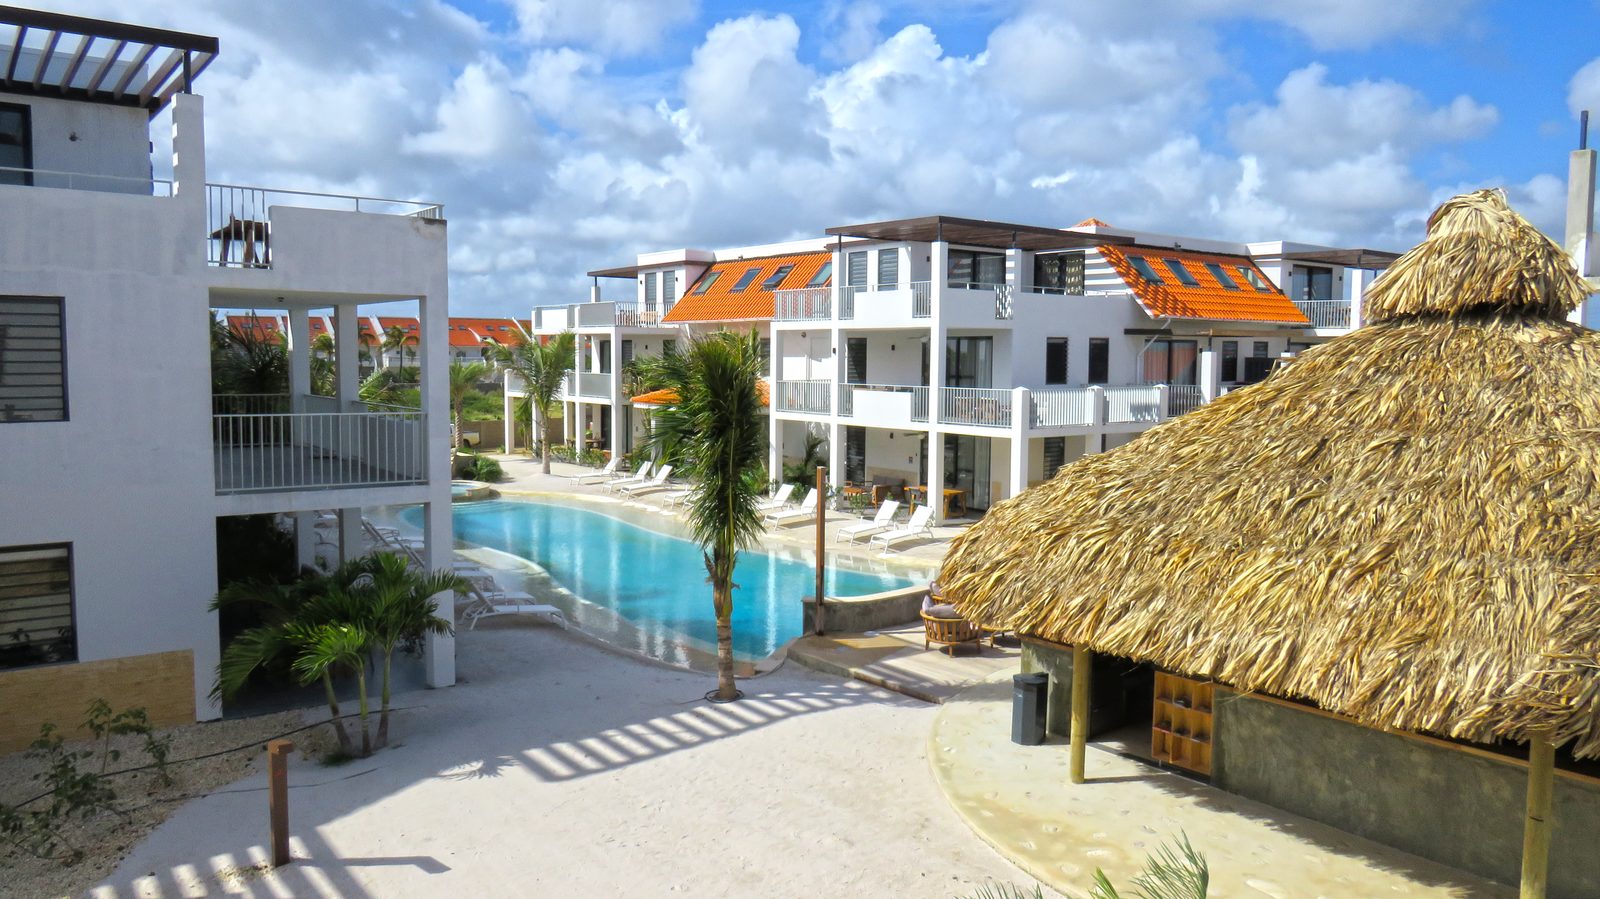 Wenn Sie auf Bonaire sind, können Sie sich im Resort Bonaire aufhalten. Luxuriöse Appartements, ausgestattet mit allem Komfort, den Sie sich wünschen könnten. Schauen Sie sich unsere verfügbaren Appartements an!